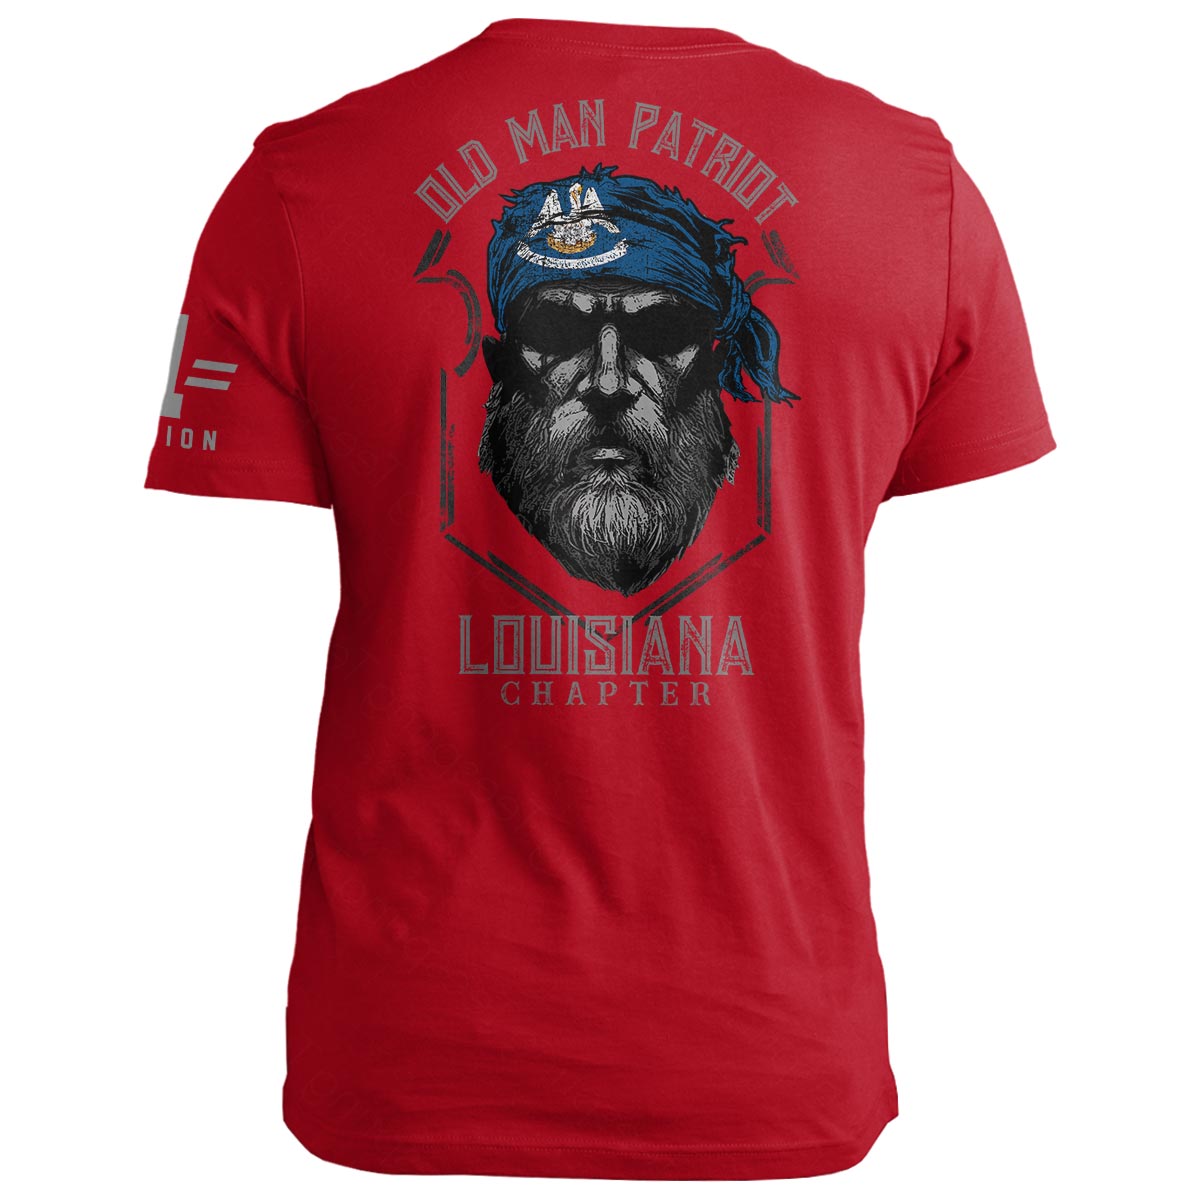 Louisiana Old Man Patriot